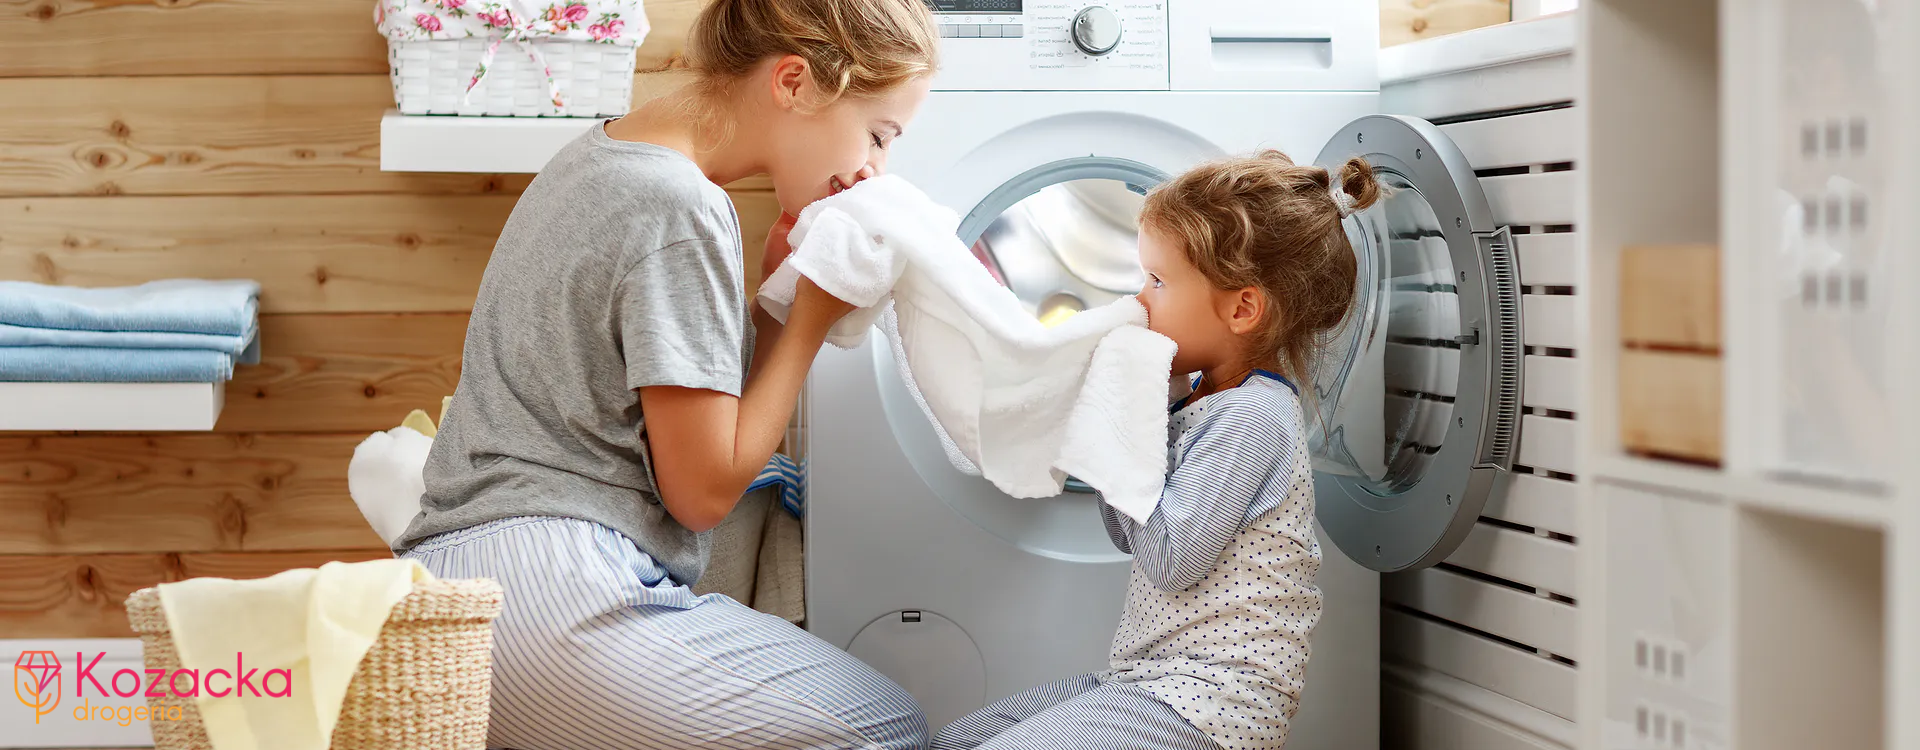 Dlaczego kapsułki do prania nie rozpuszczają się?